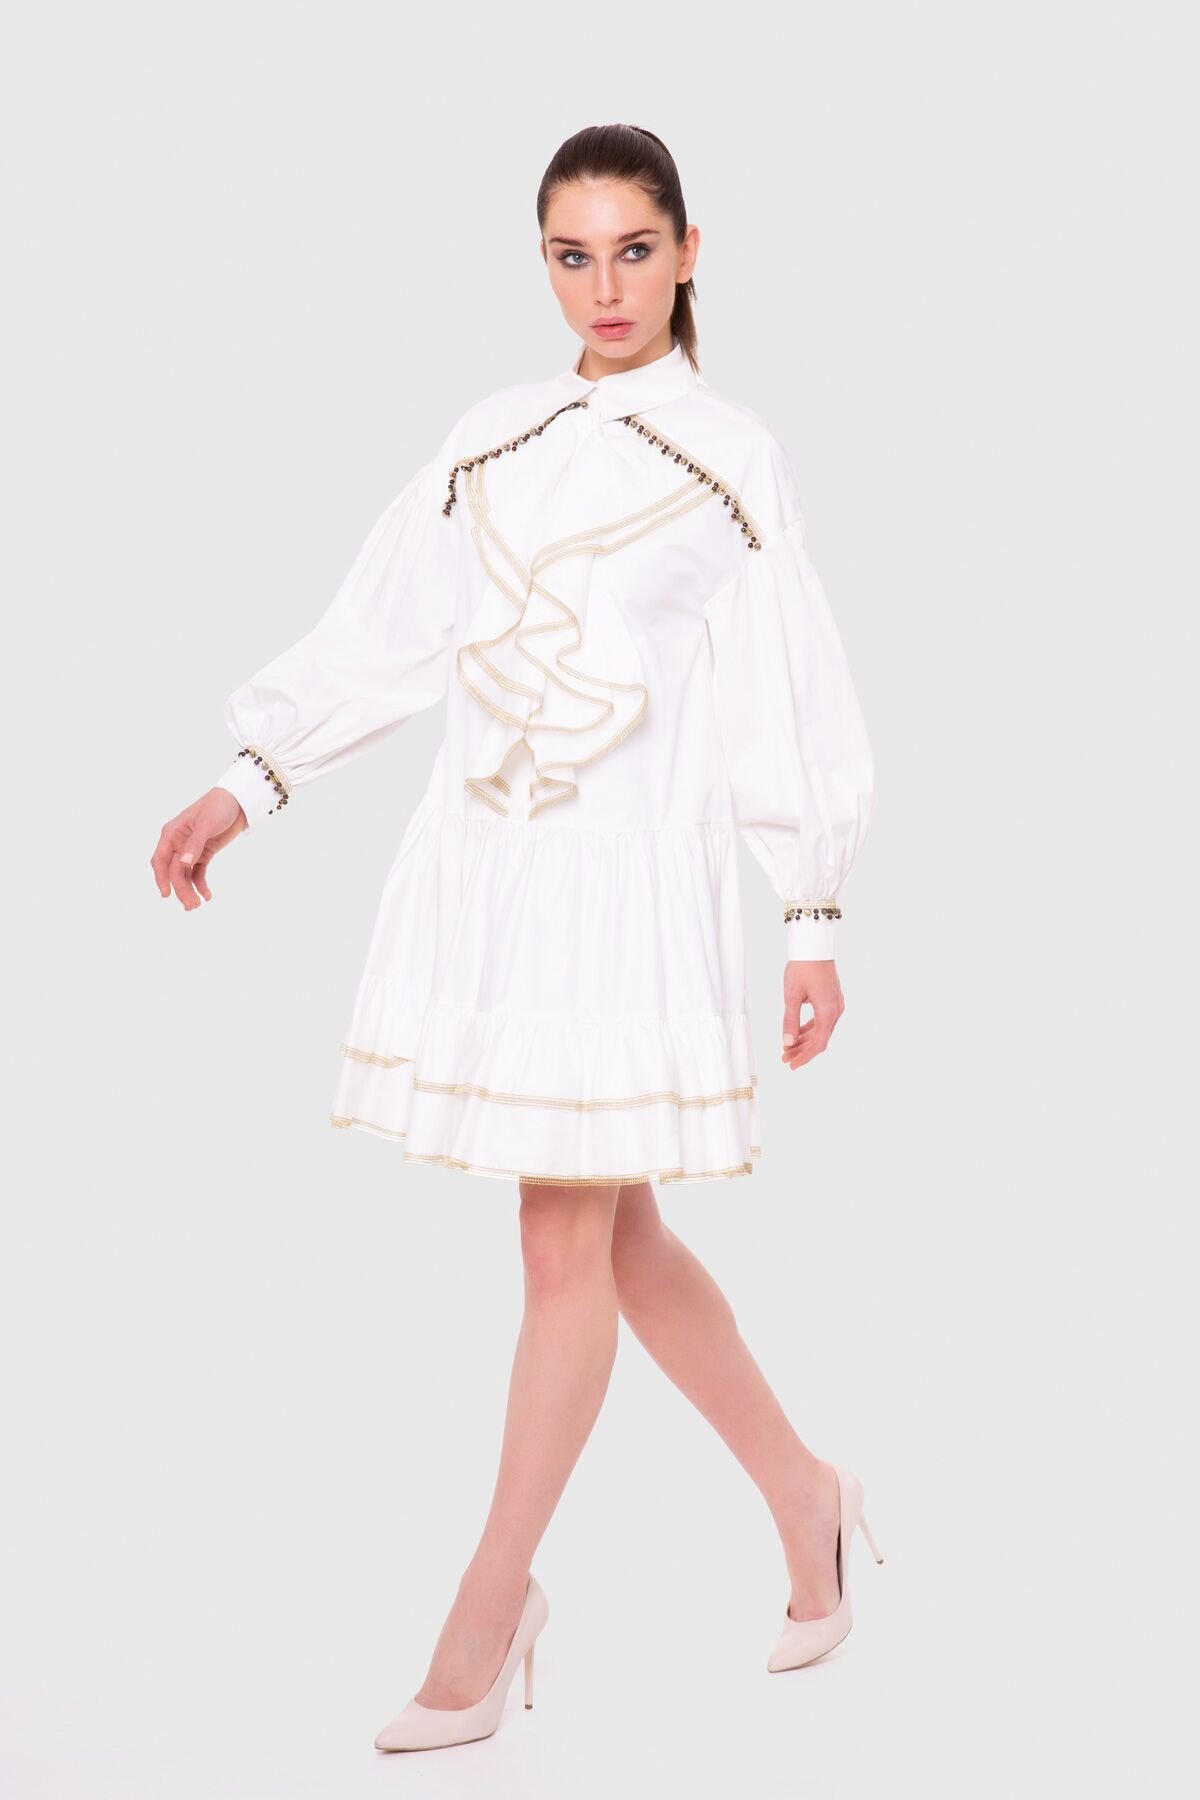 Godeli, Voluminous Sleeves Mini White Dress